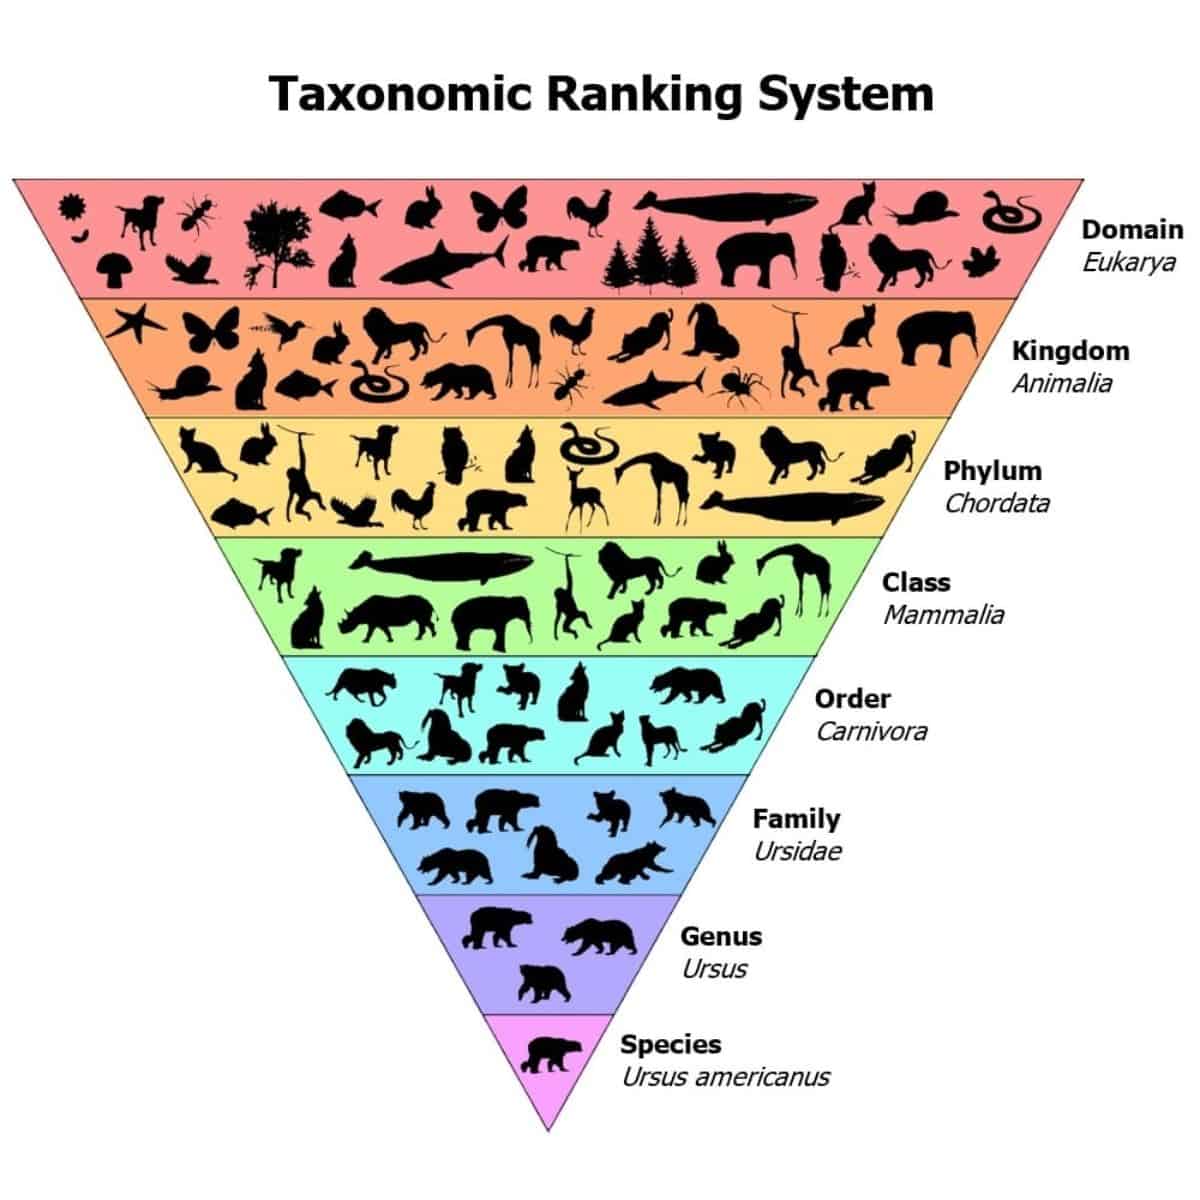 Taxonomic ranking system.